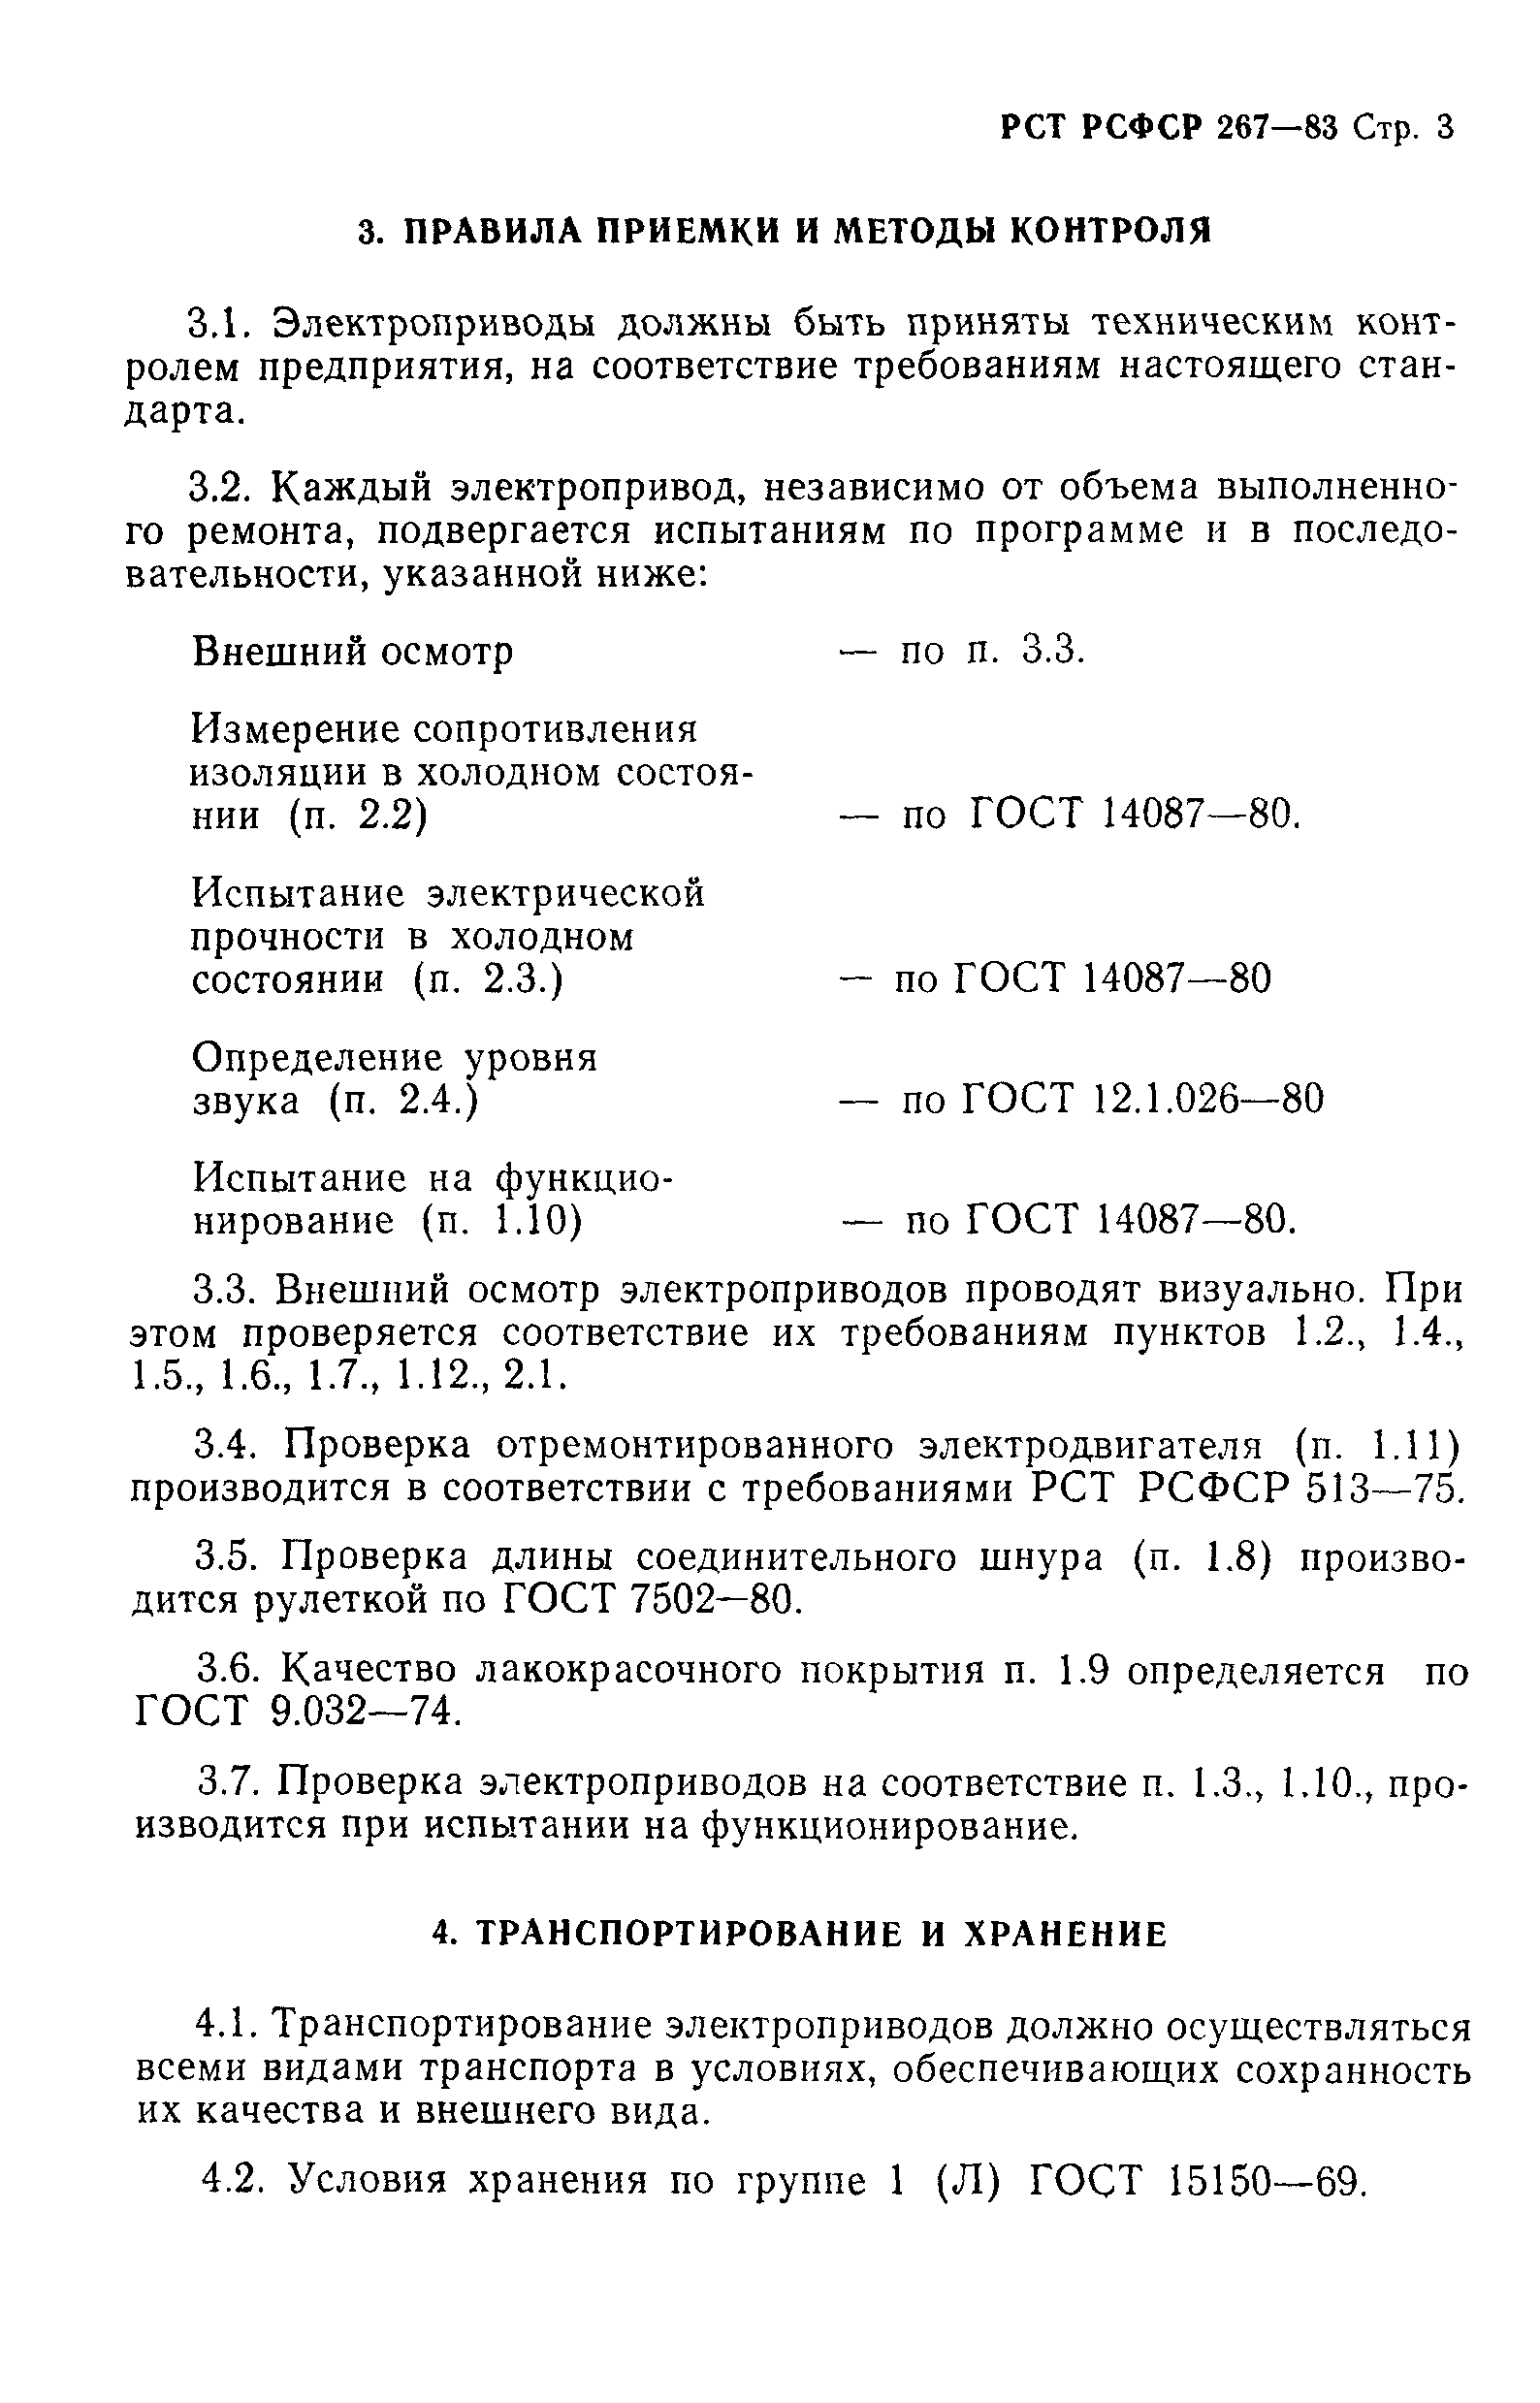 РСТ РСФСР 267-83